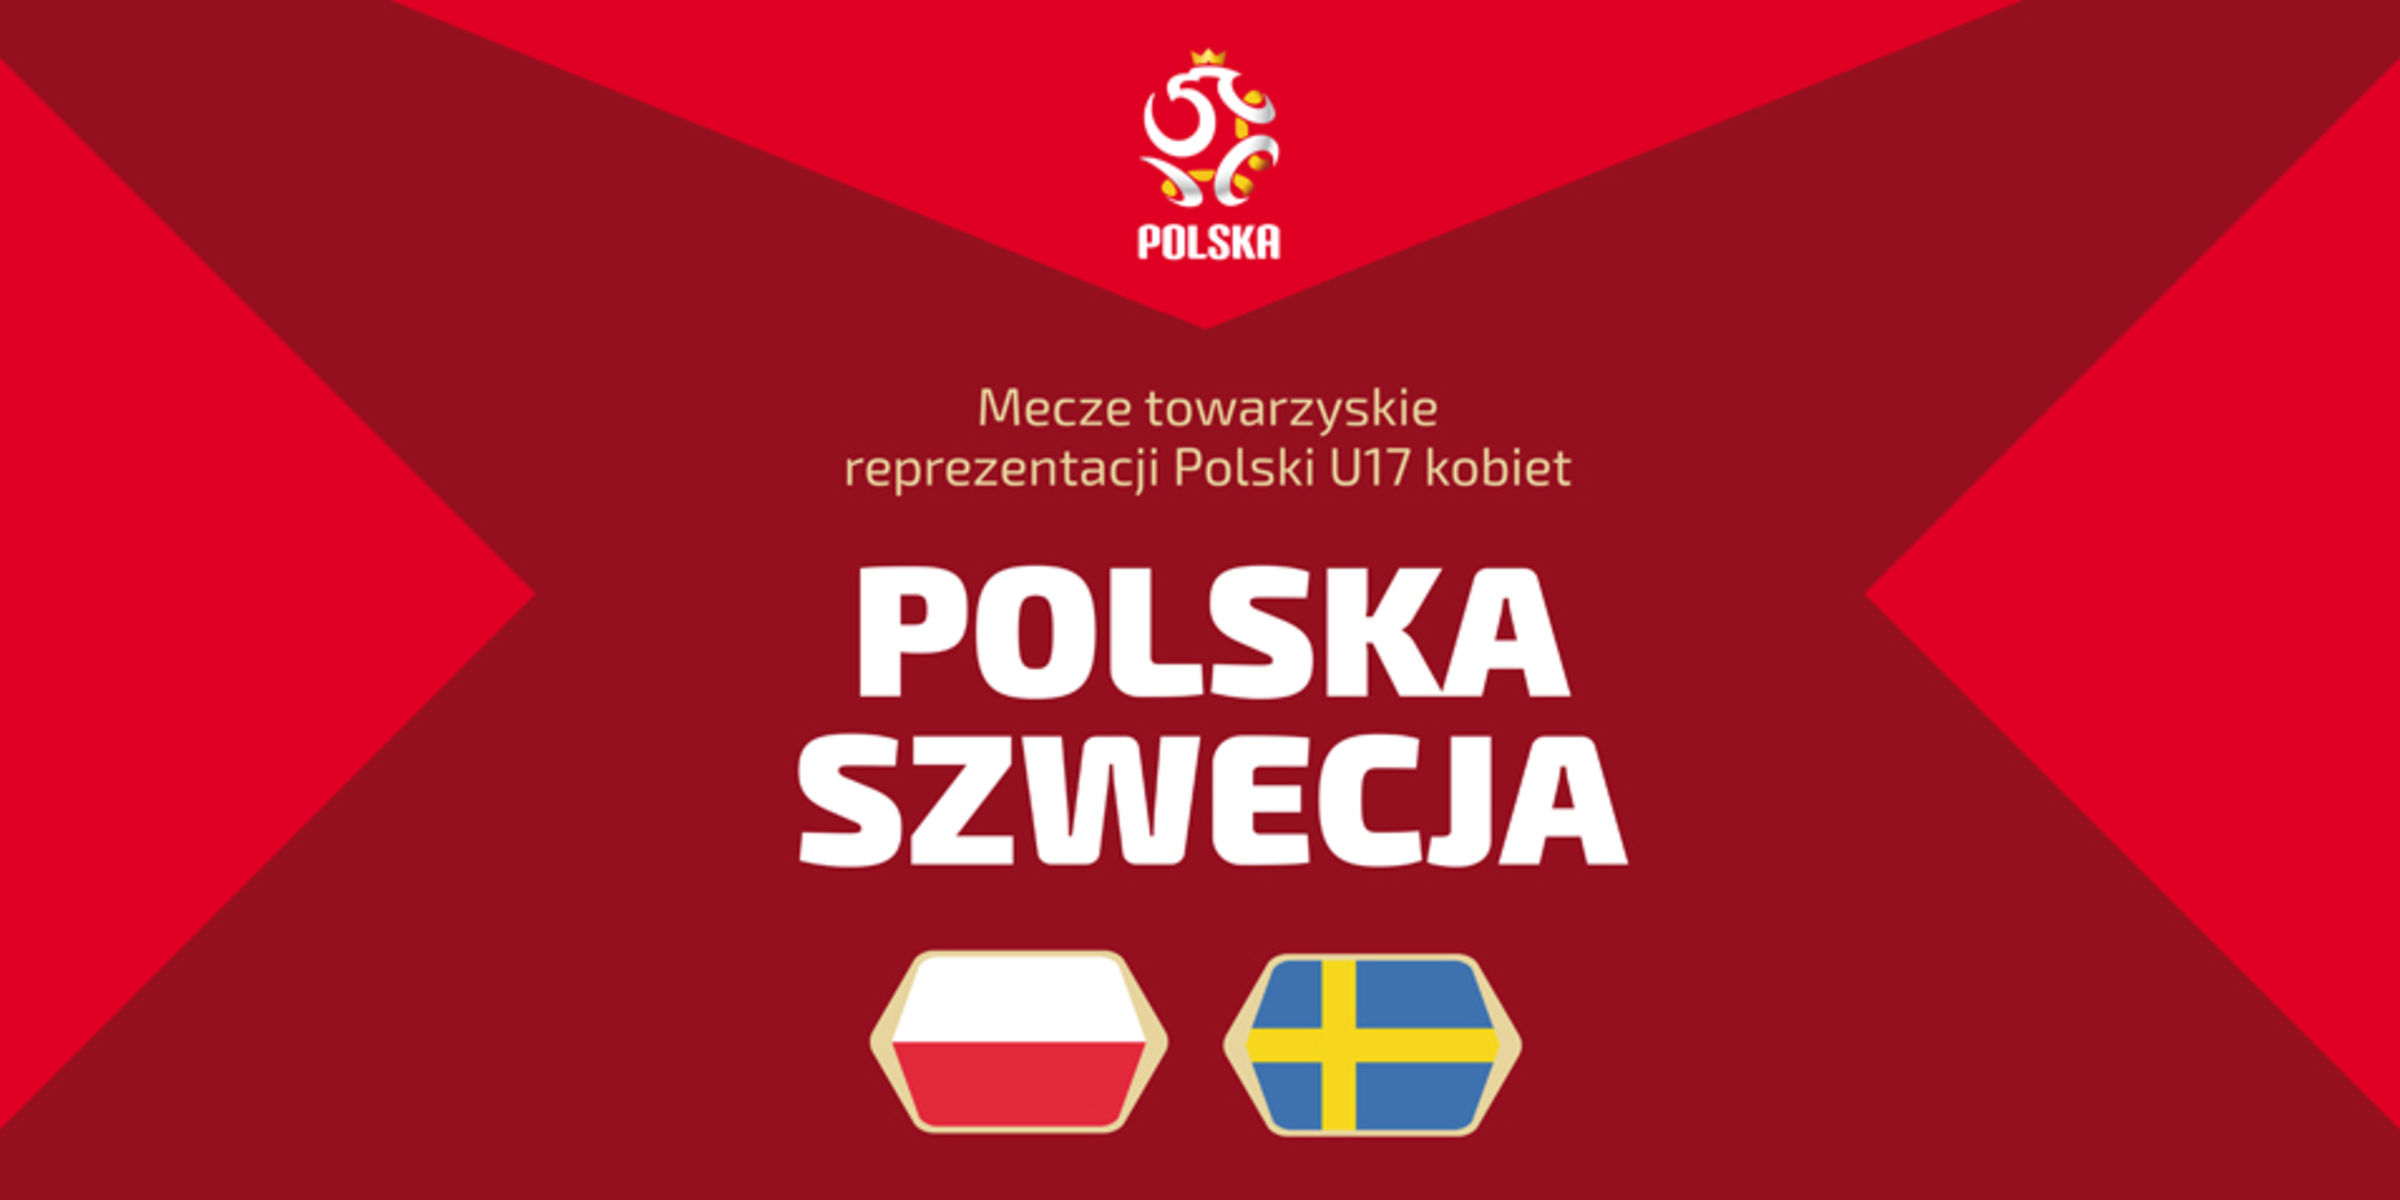 Grafika promująca wydarzenie. Fot. wmzpn.pl